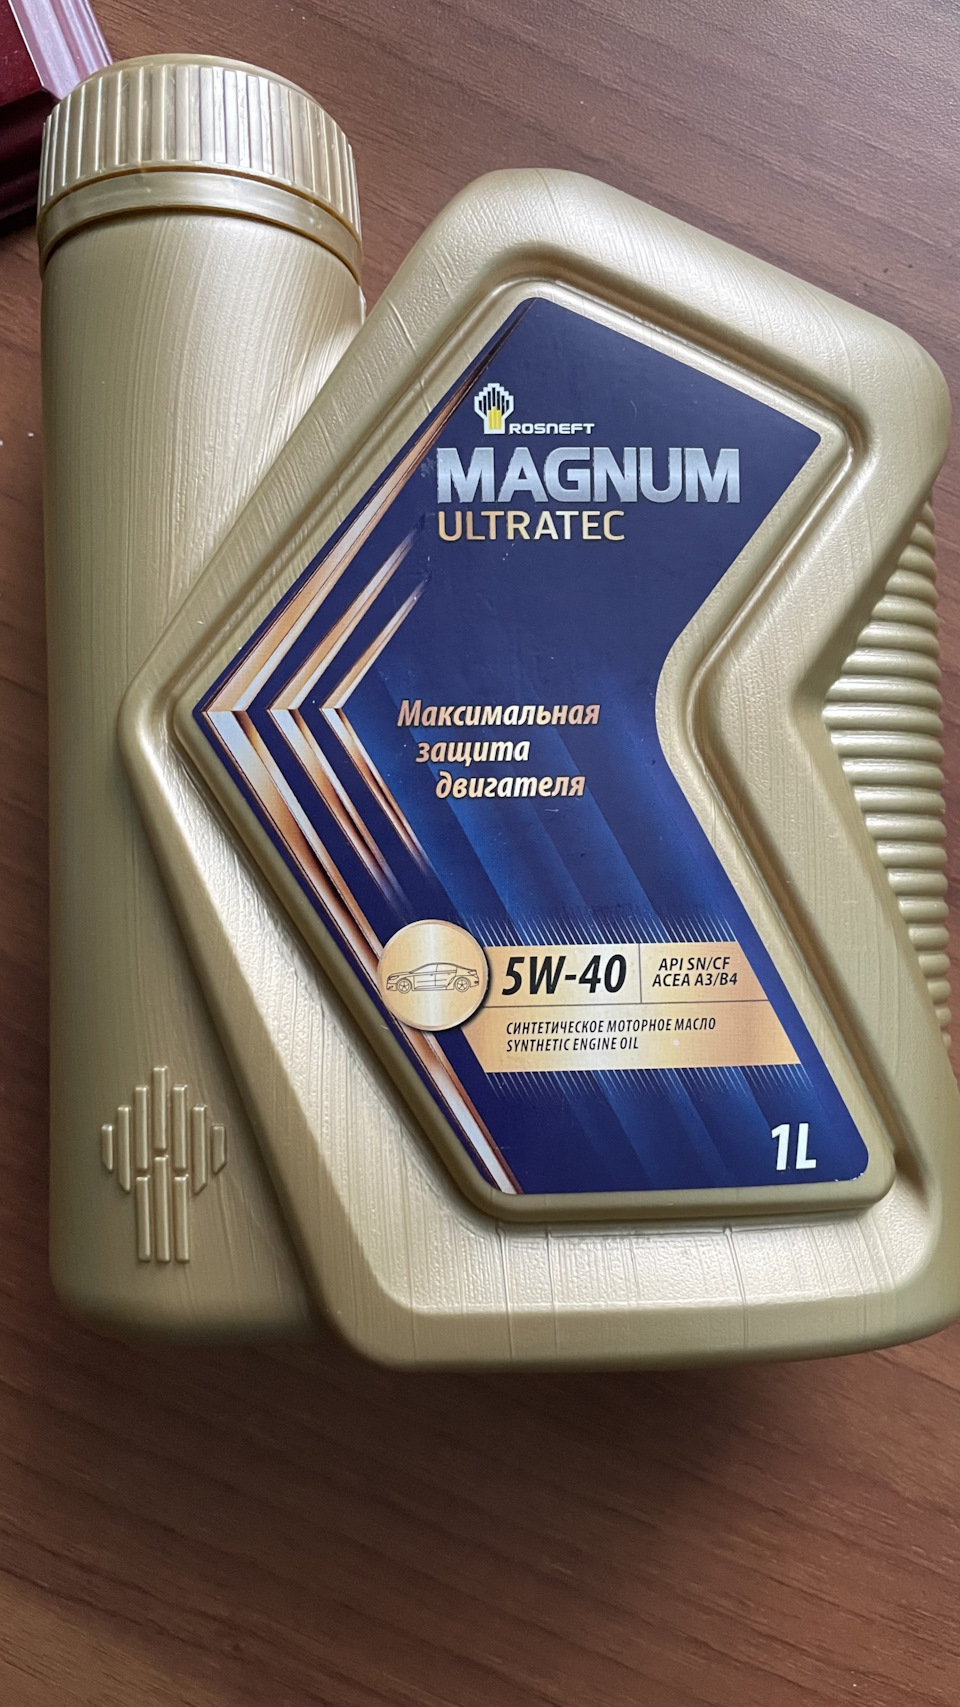 Купить масло роснефть ультратек. Rosneft Magnum Ultratec 5w40 реклама. Rosneft Magnum Ultratec. Упаковка моторного масла Magnum Ultratec. Справка от производитель моторного масла Magnum Ultratec.